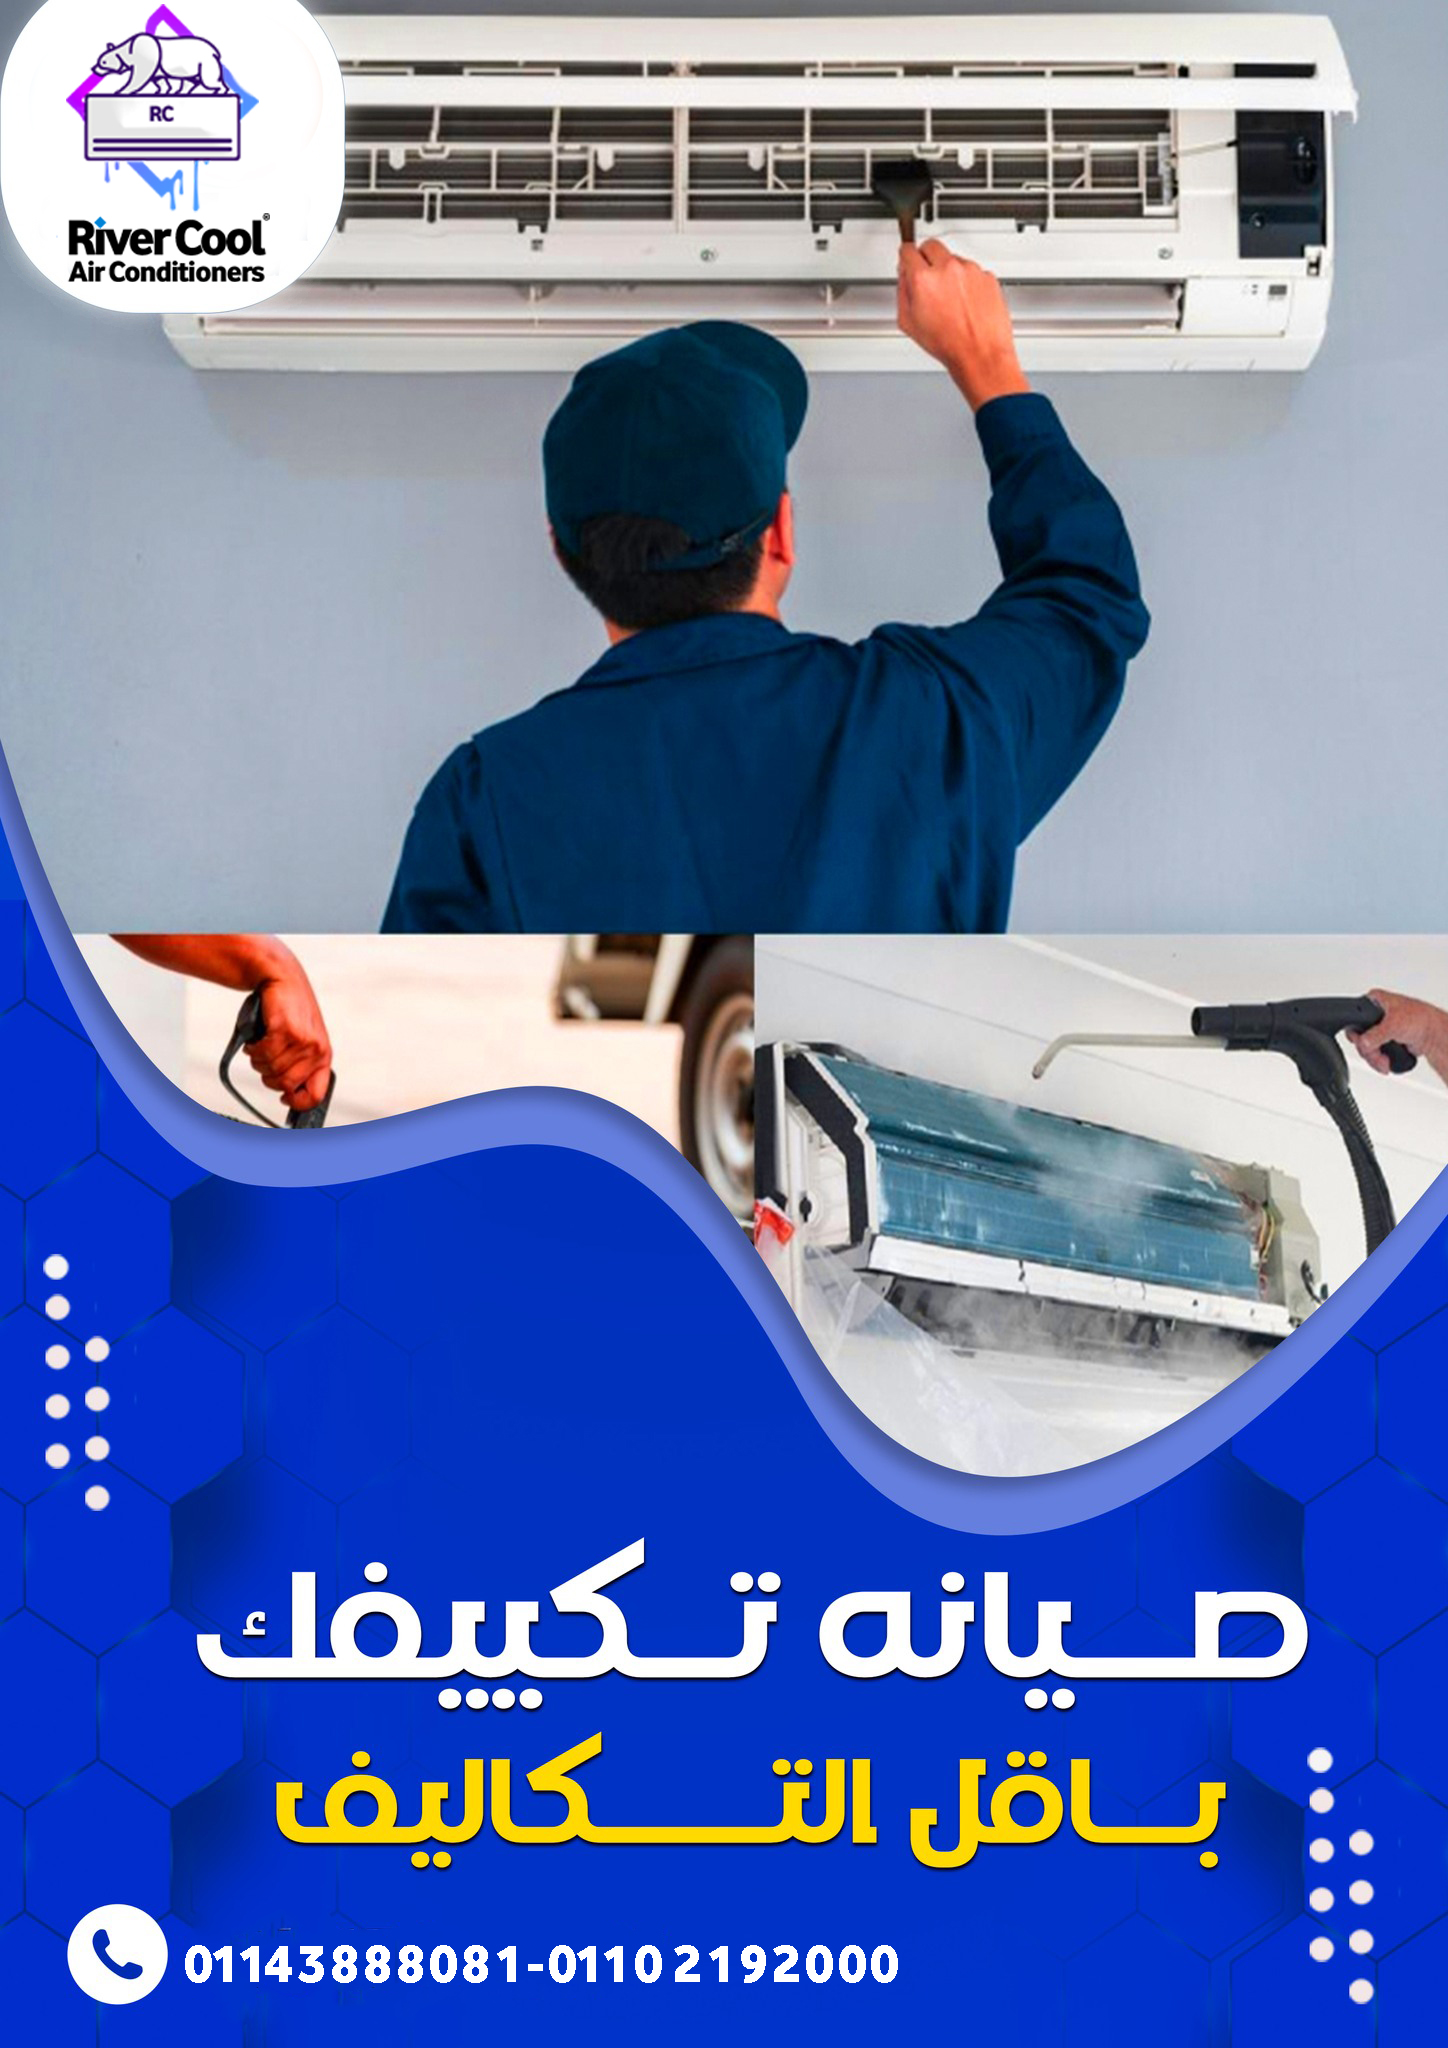  خدمات صيانة منزلية شركة خدمات صيانة منزلية في مصر